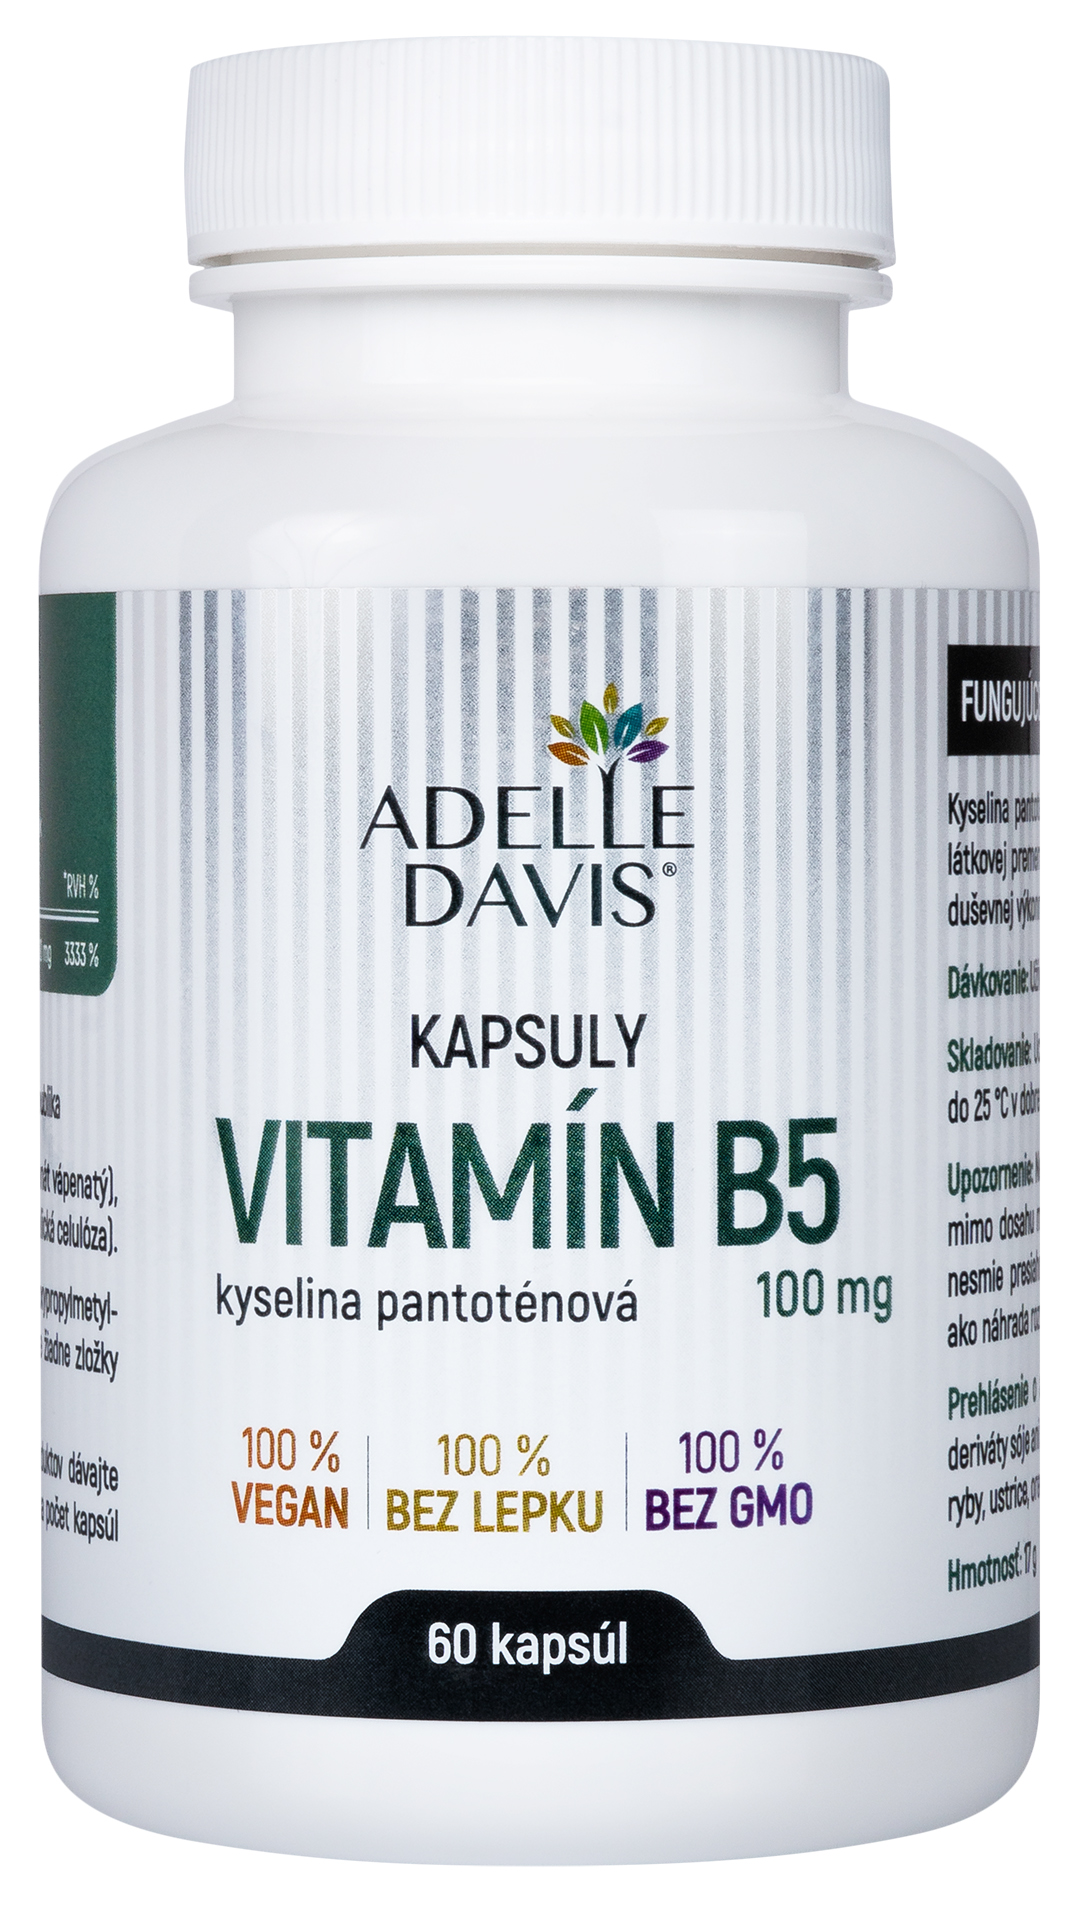 Adelle Davis - Vitamin B5 (kyselina pantotenová) 100 mg, 60 kapslí